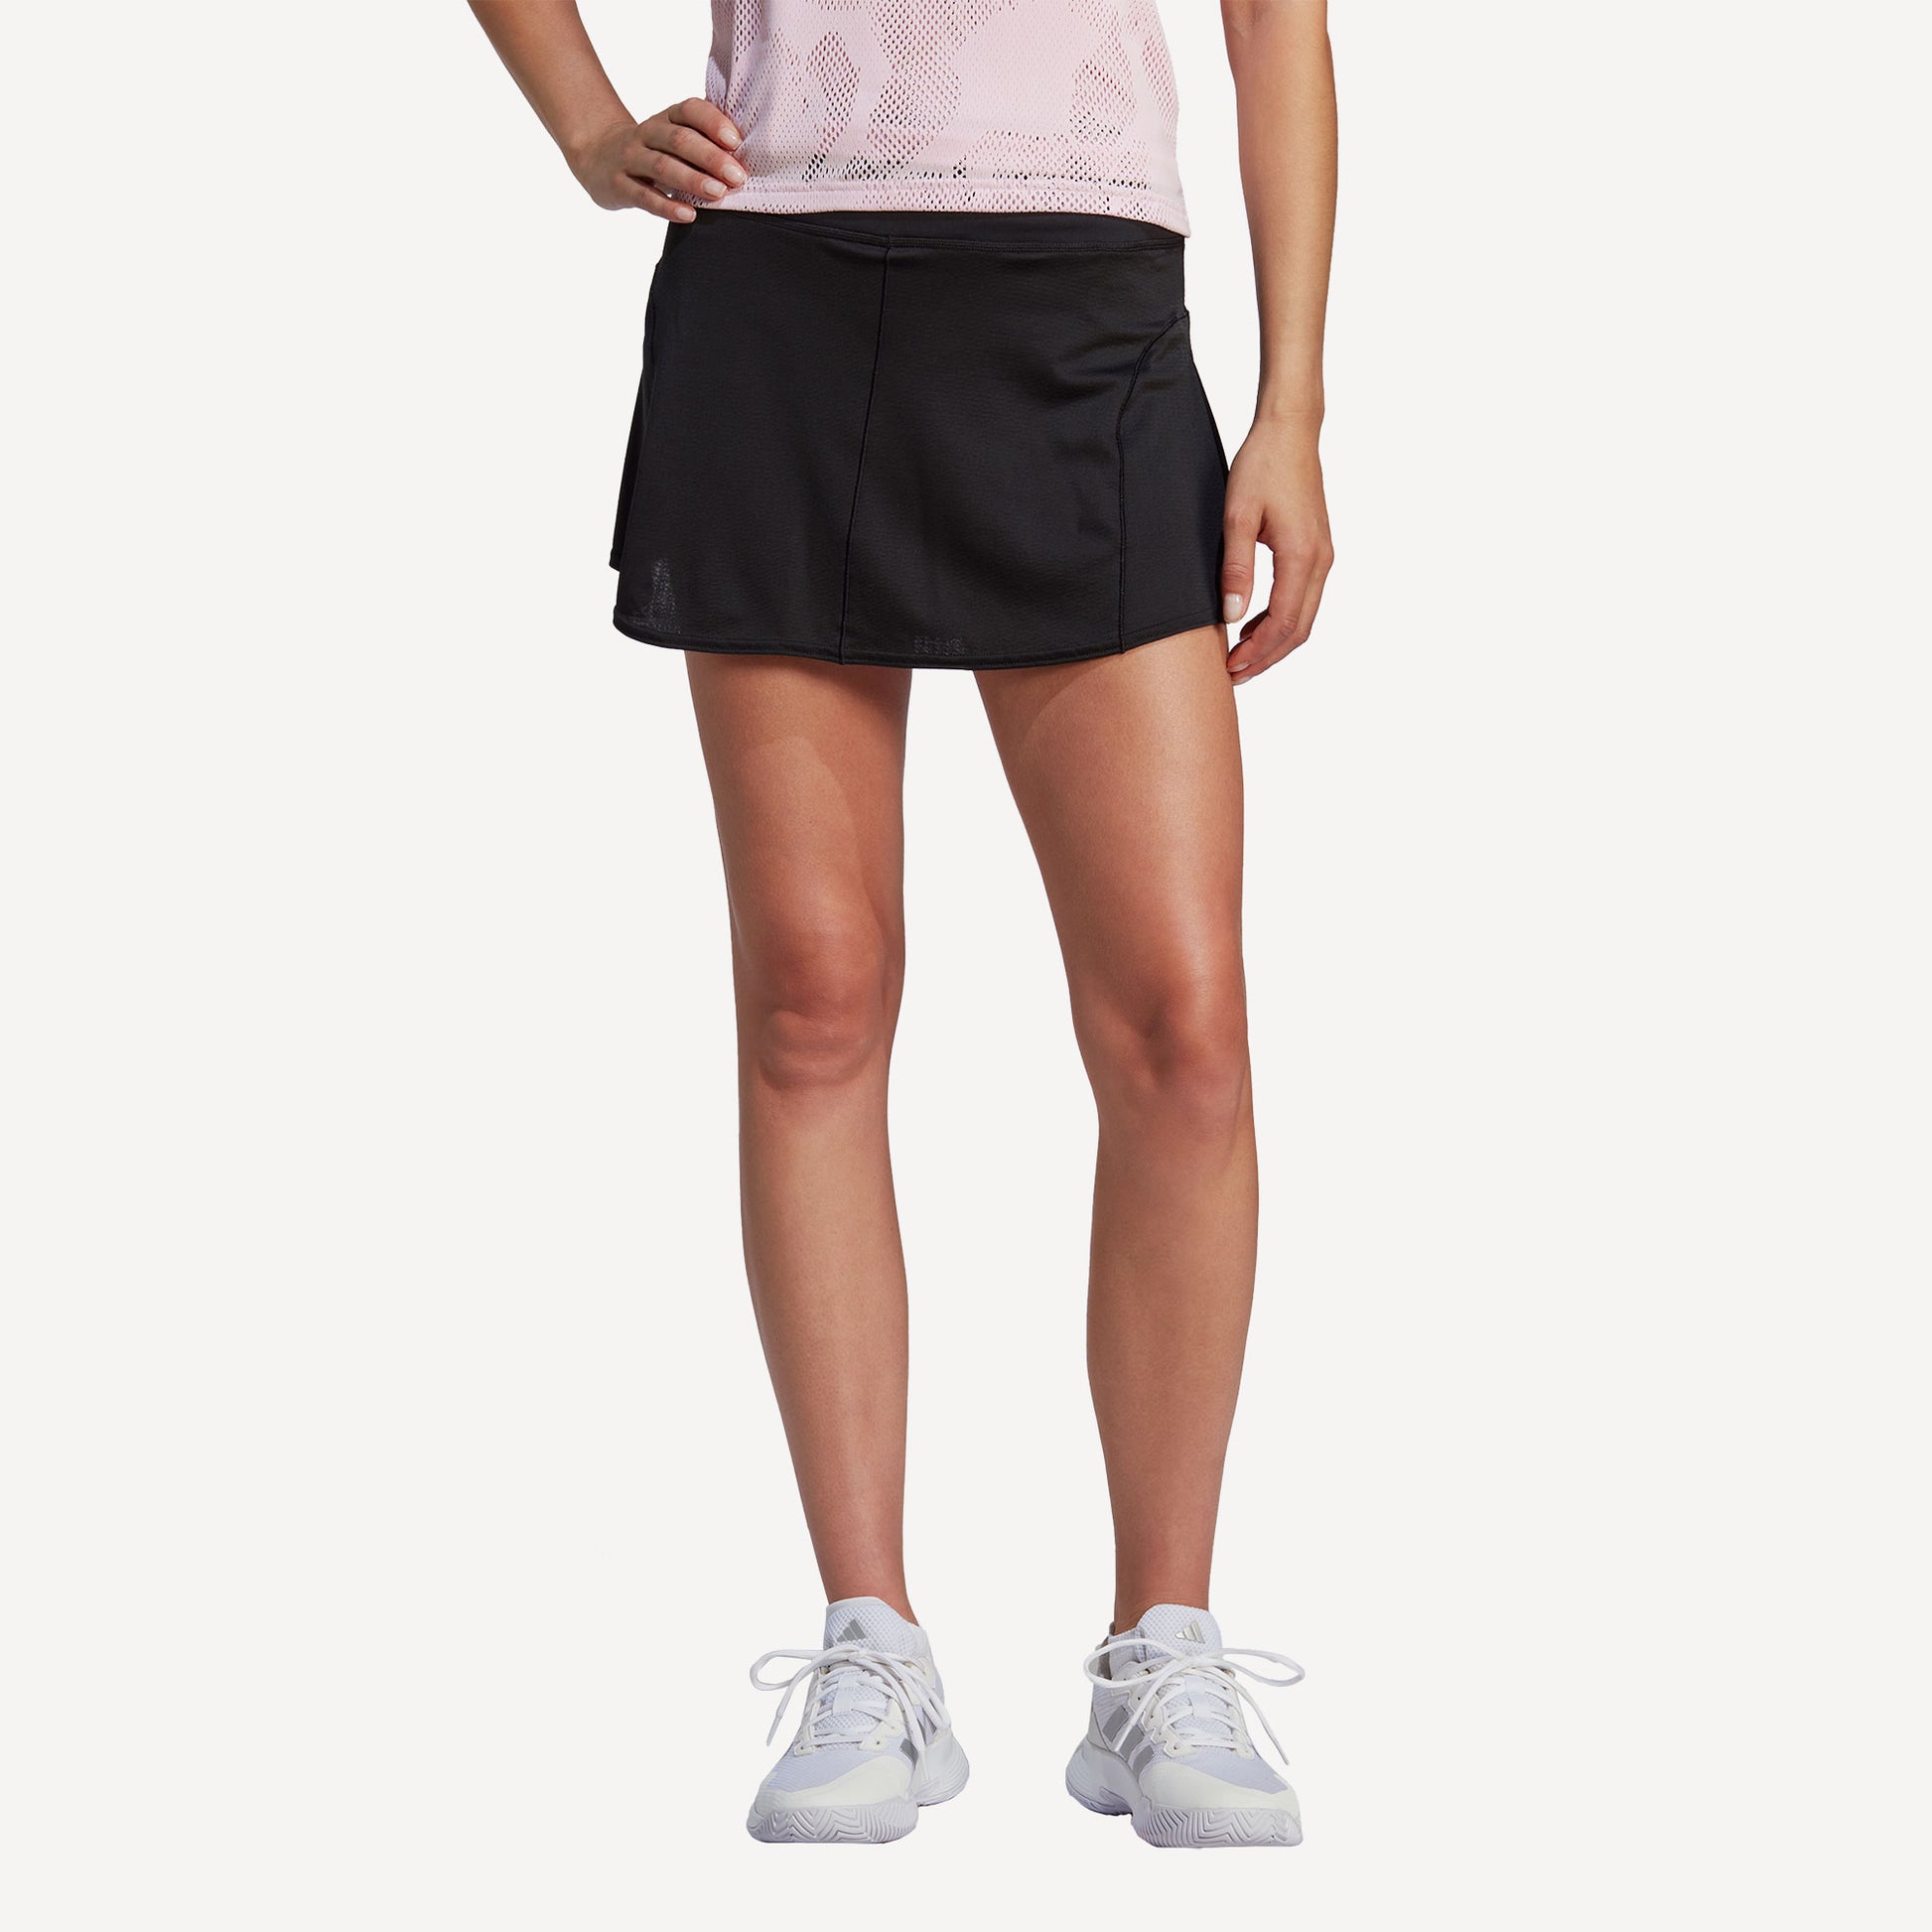 adidas GameSet Match Women's Tennis Skirt Black (1)